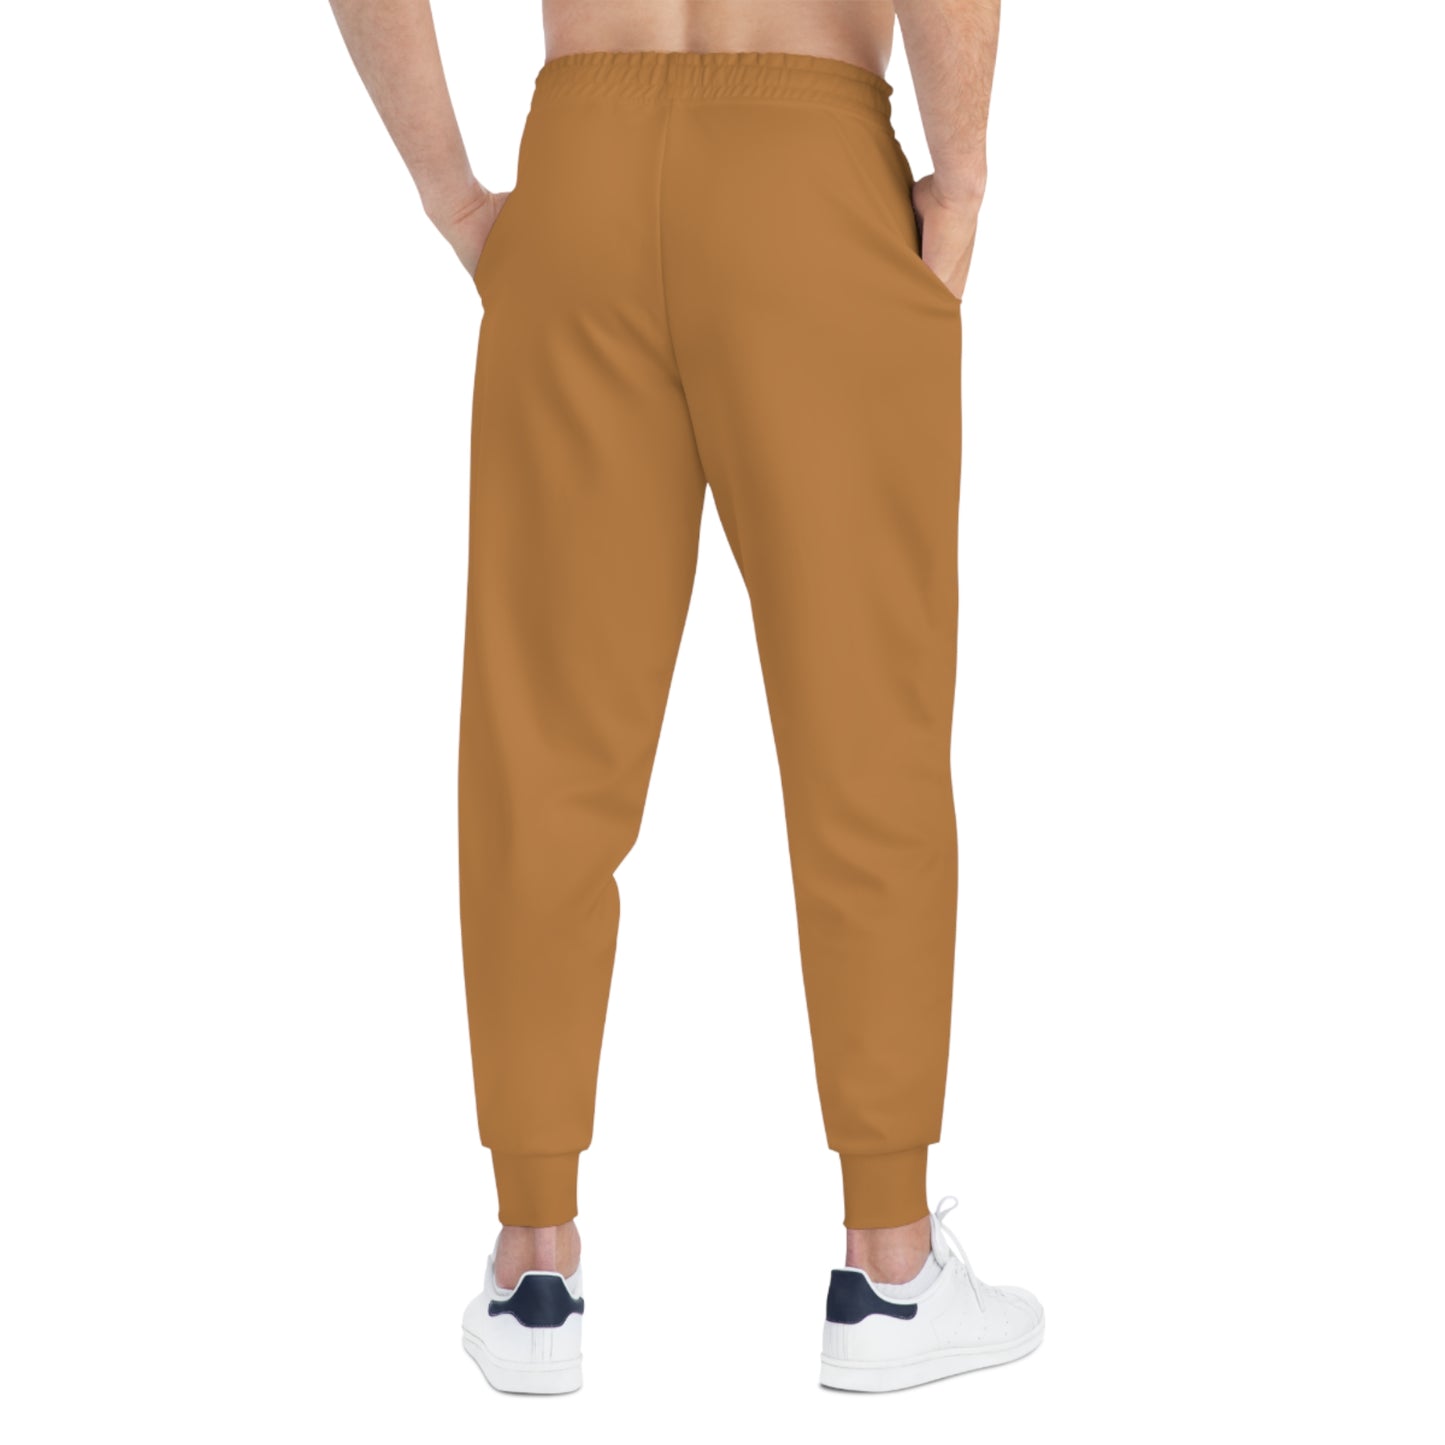 Men's Global sweatpants - Light brown